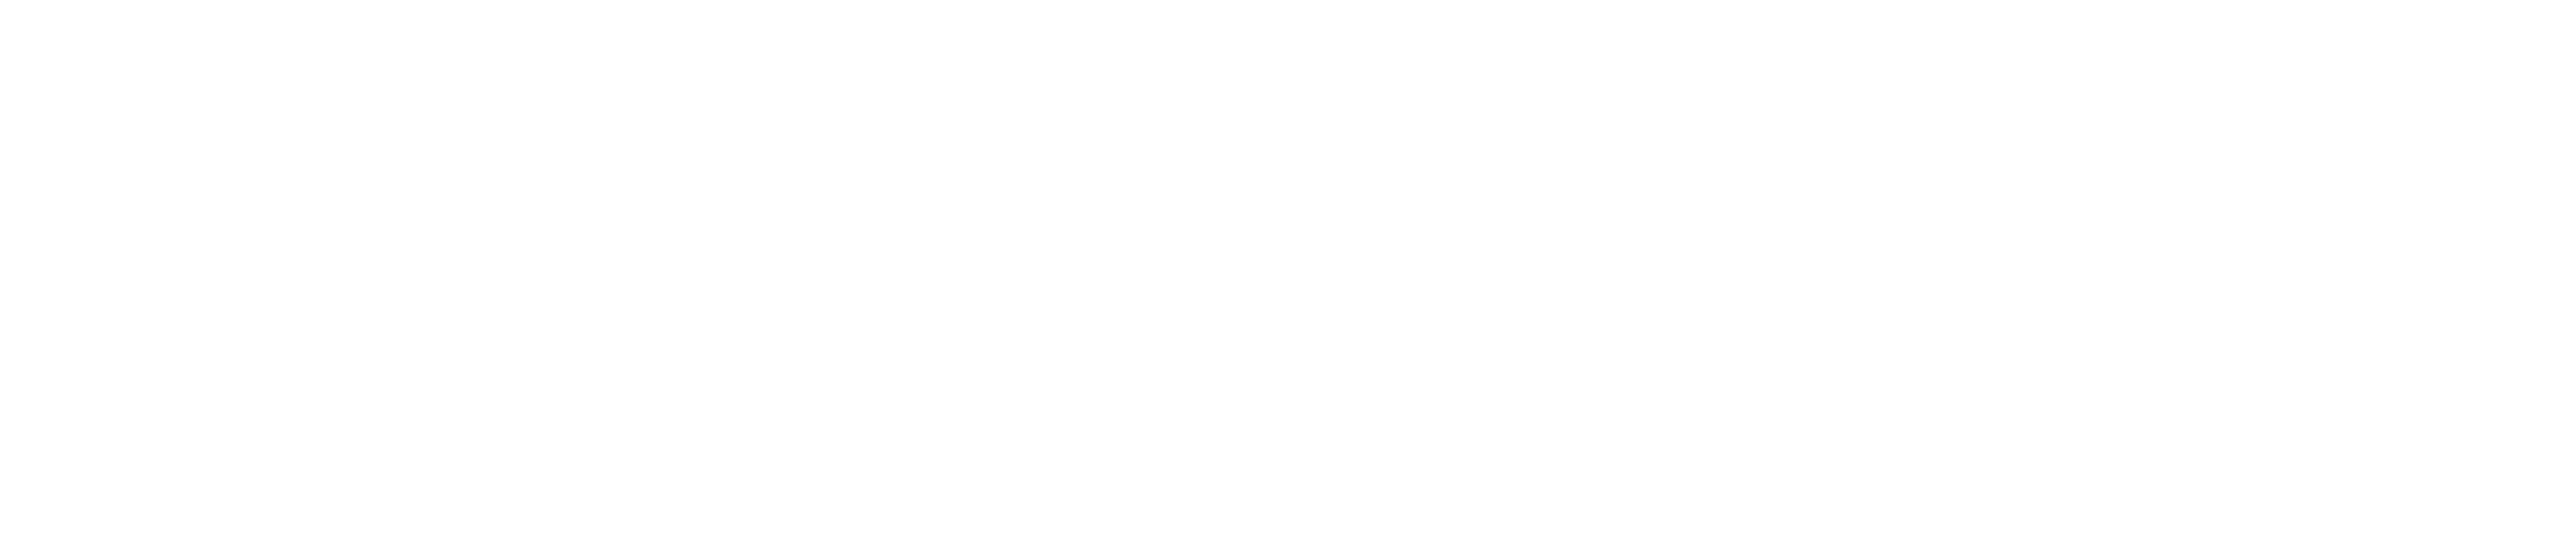 Soundlogia_Logo